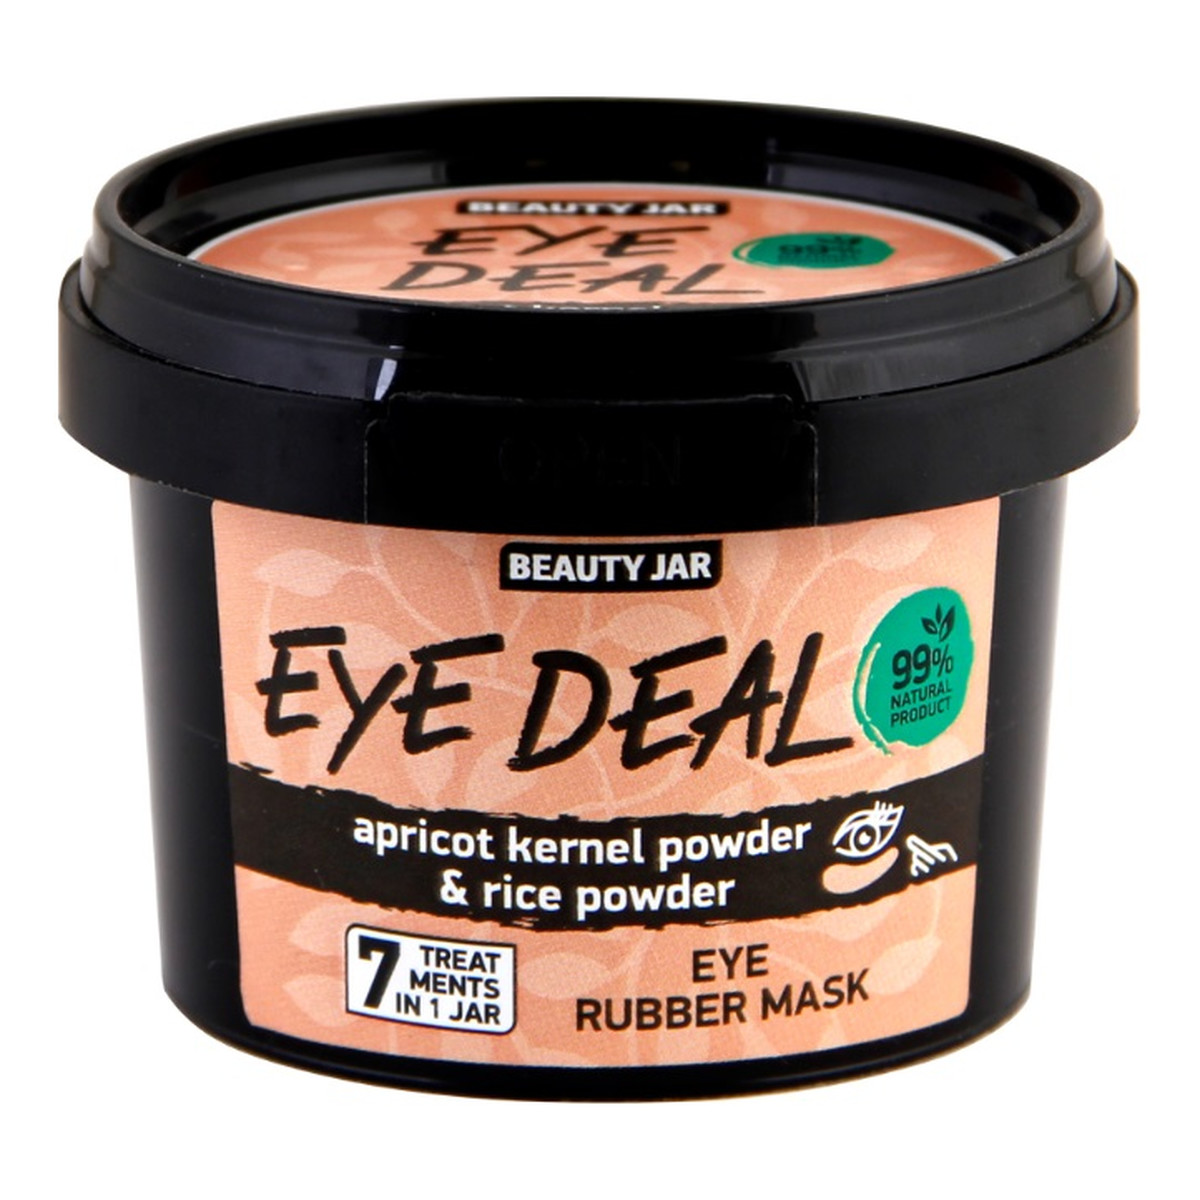 Beauty Jar Eye Deal maska pod oczy Morela i Ryż 15g